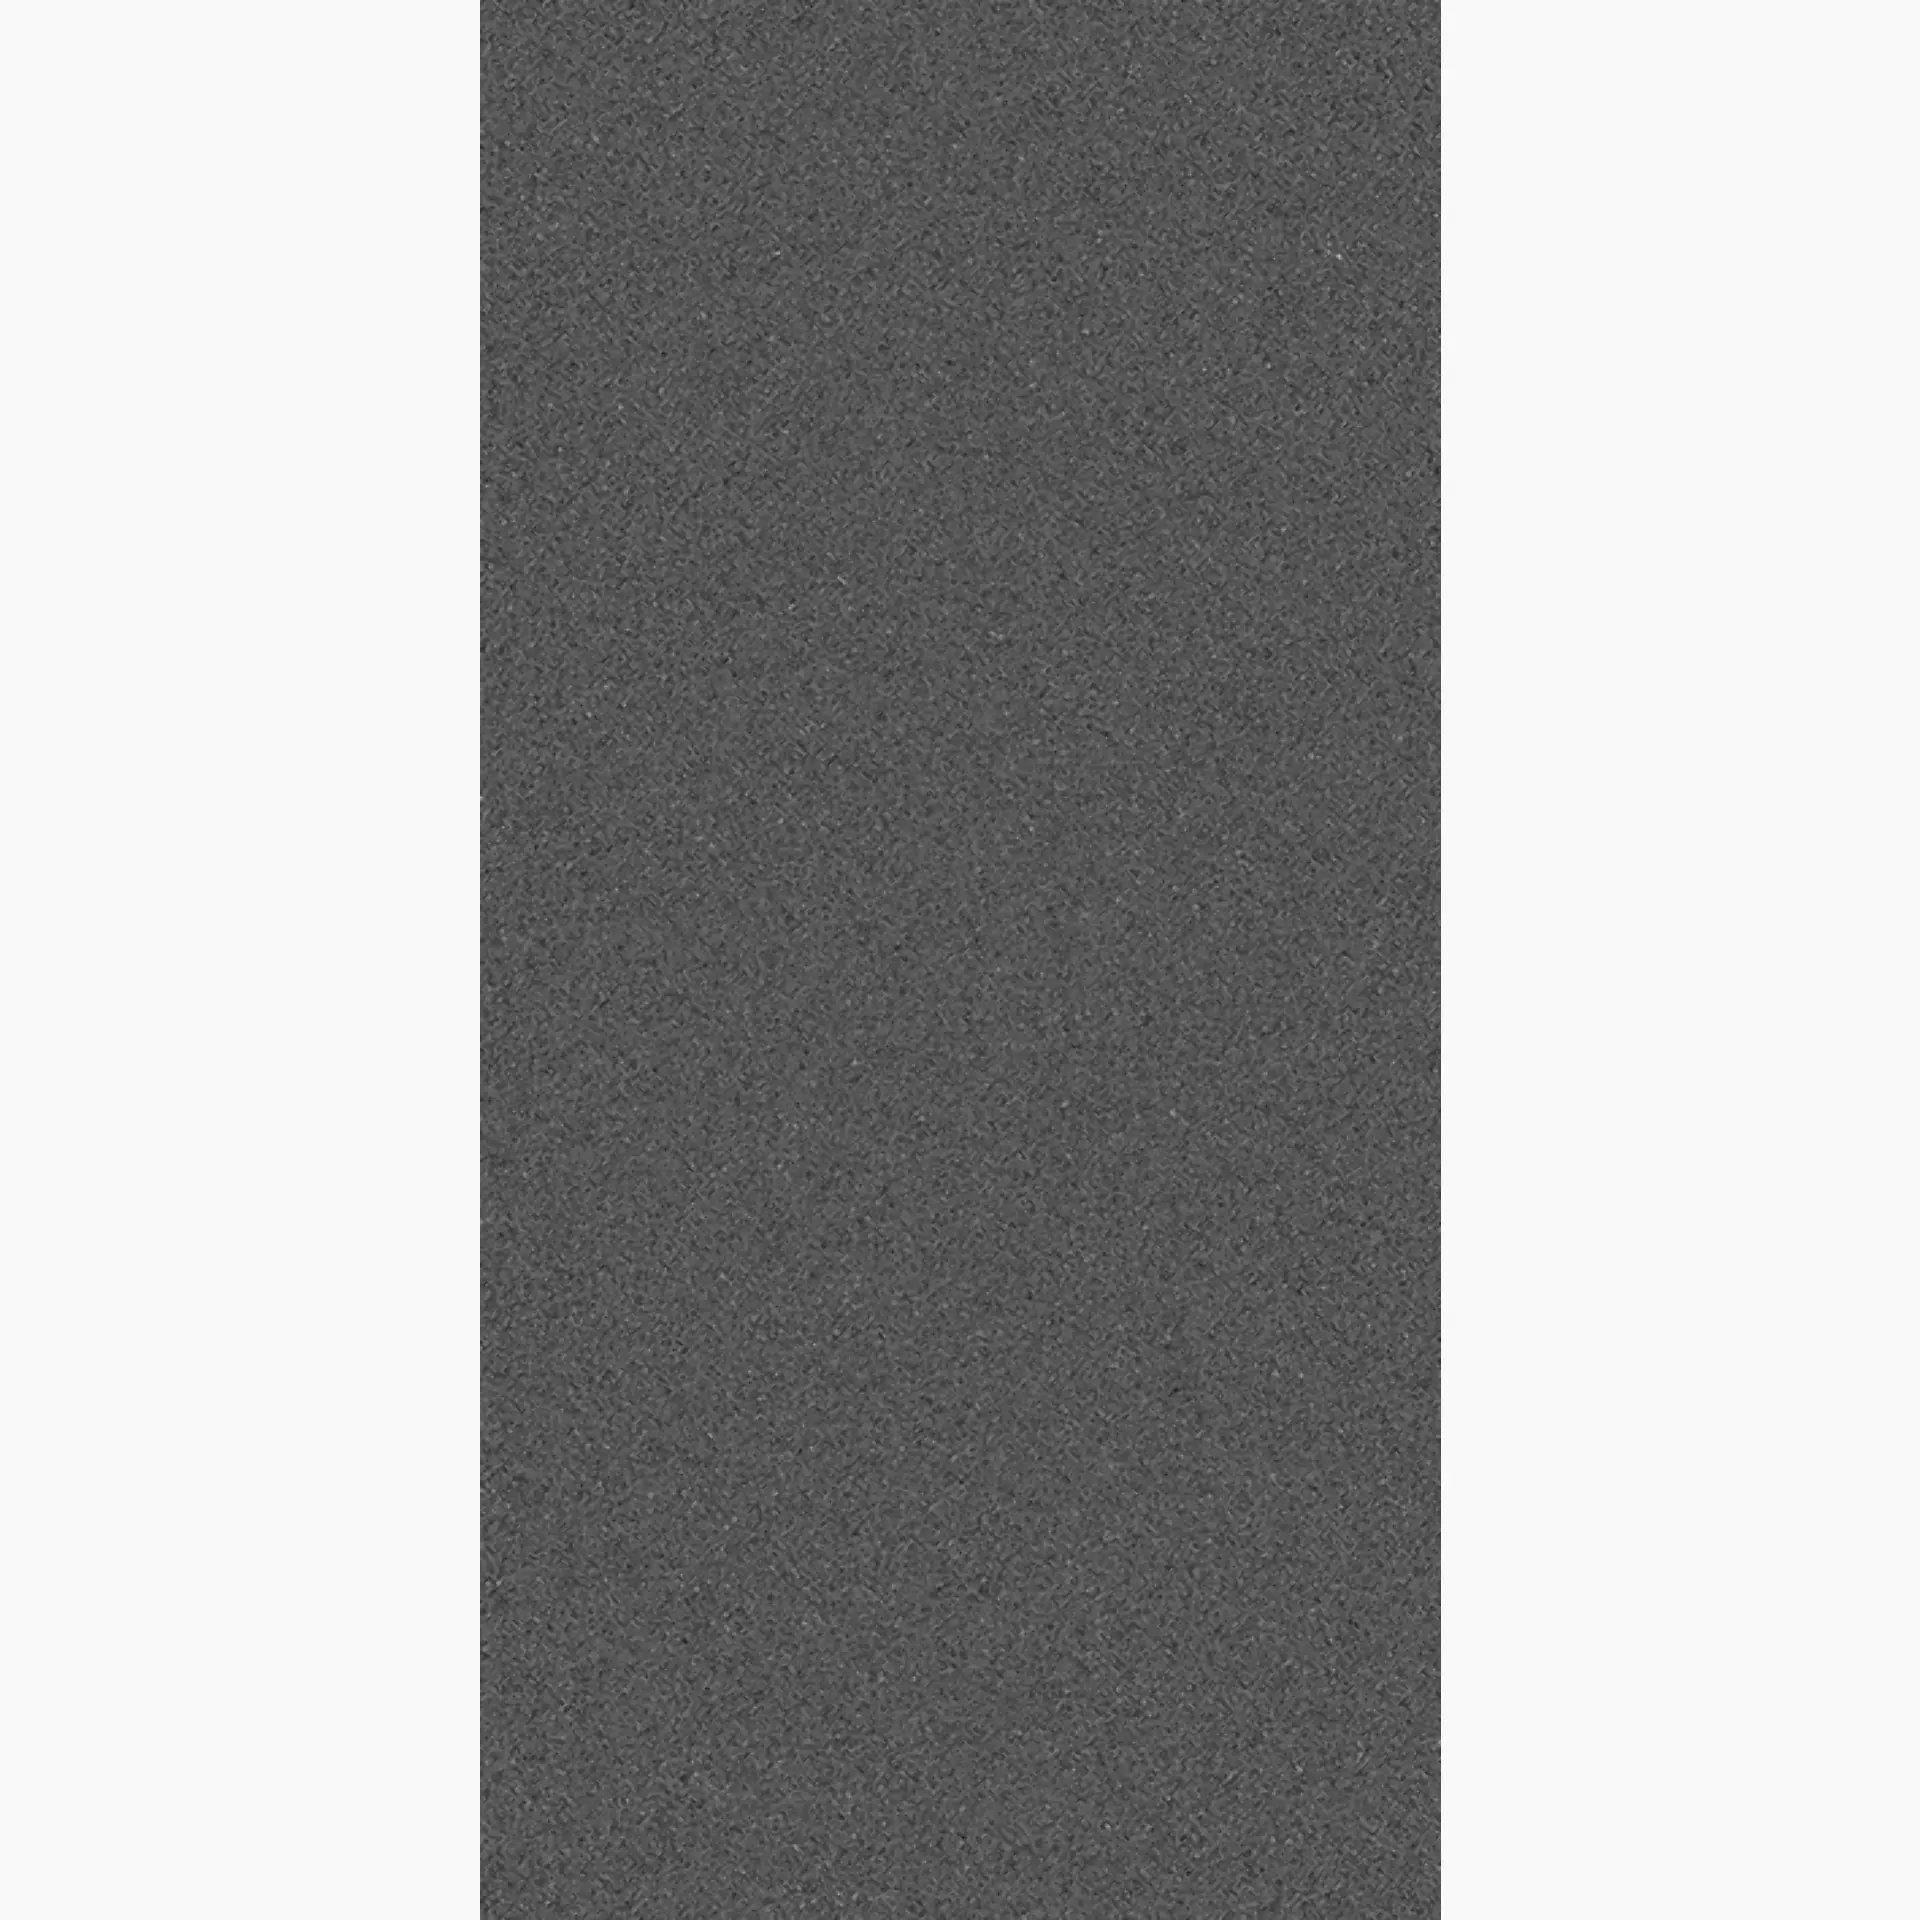 Wandfliese,Bodenfliese Villeroy & Boch Pure Line 2.0 Asphalt Grey Matt Asphalt Grey 2754-UL90 matt 30x60cm rektifiziert 12mm